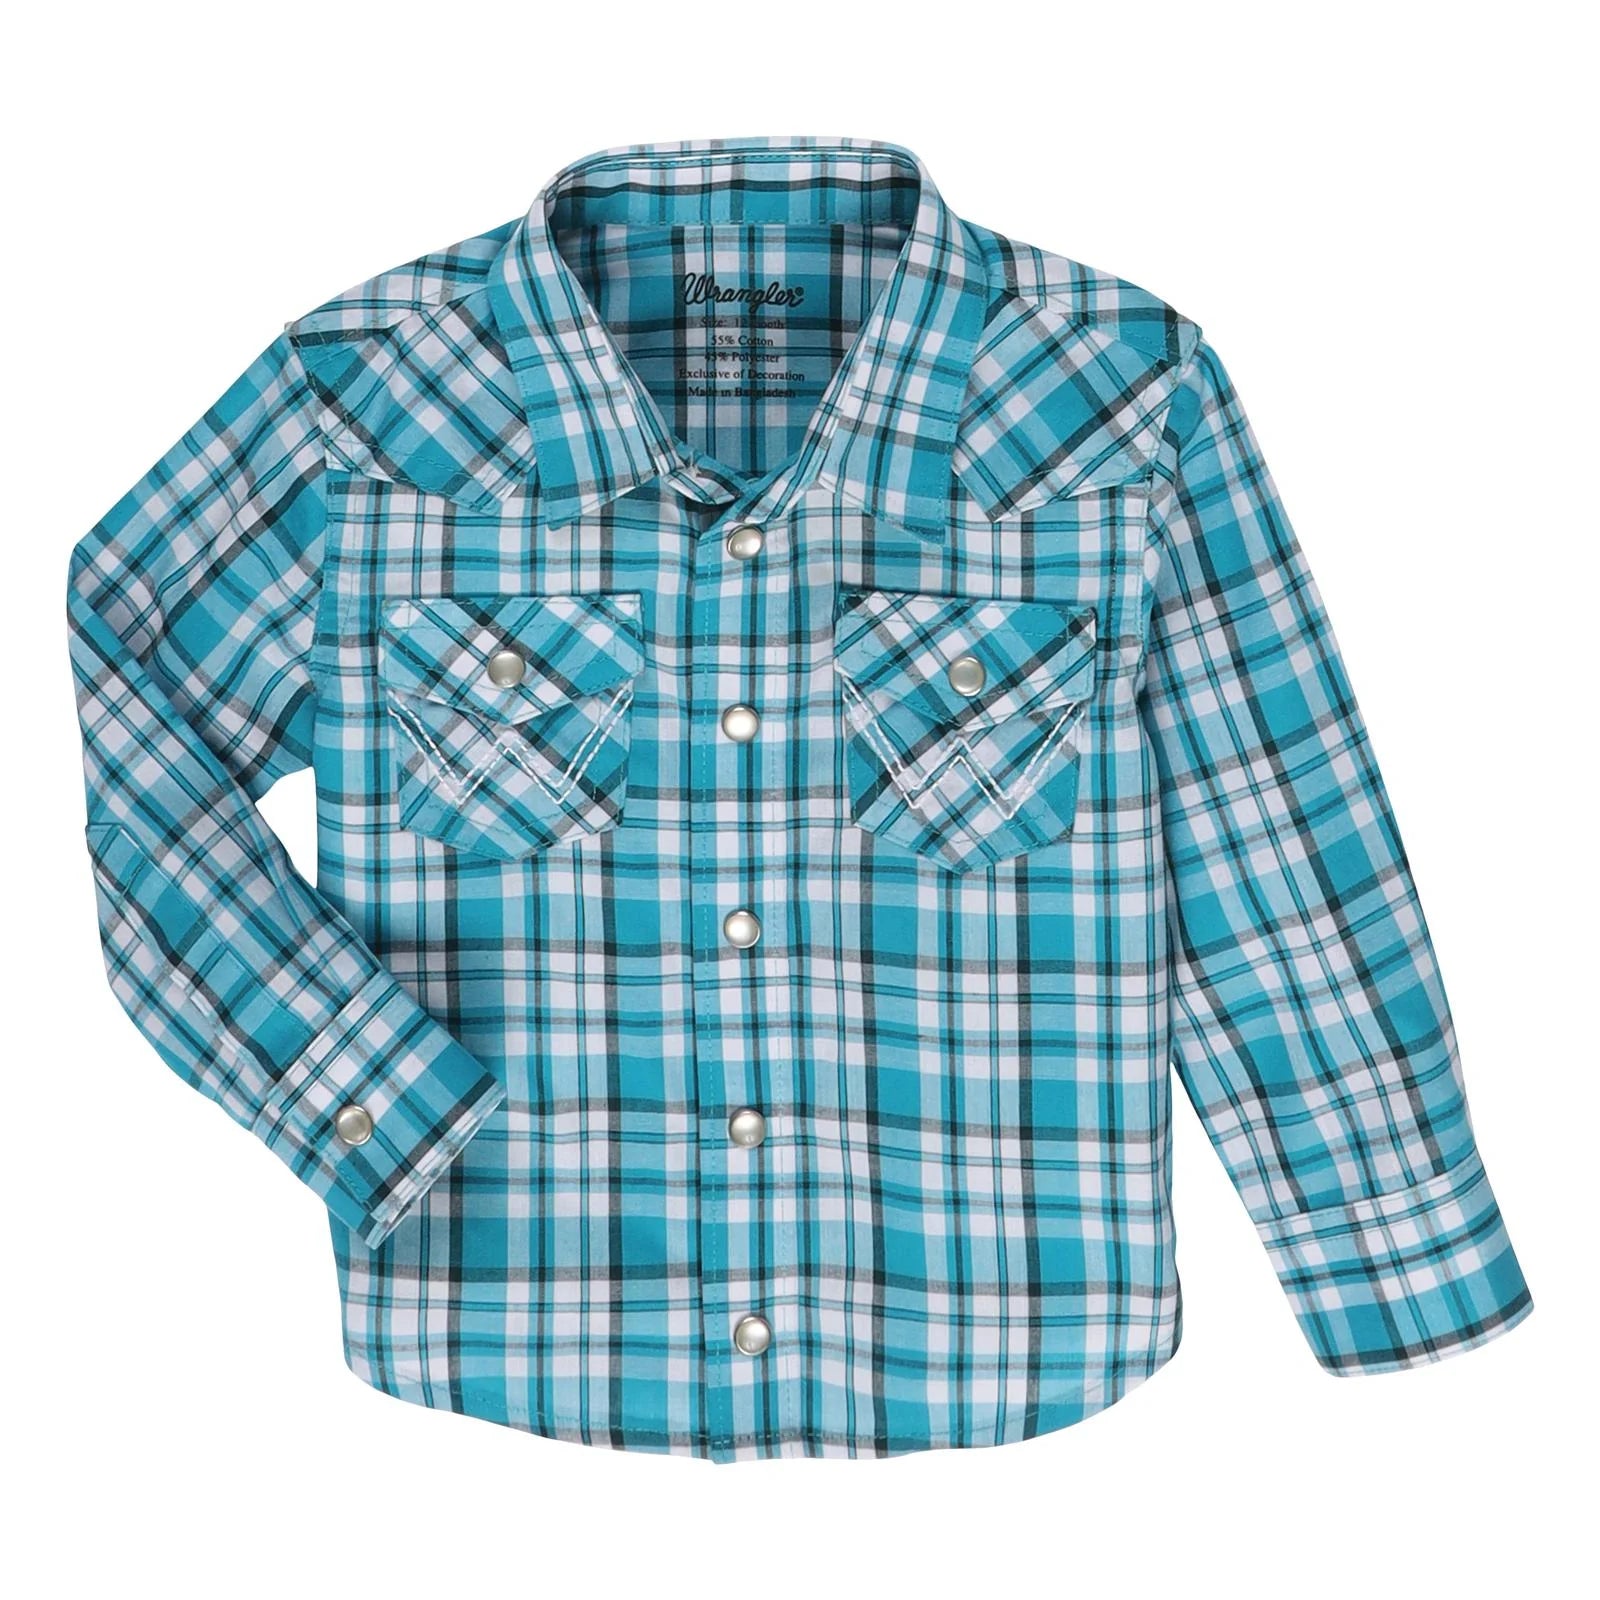 Wrangler Infant/ Toddler Boy's Long Sleeve Shirt